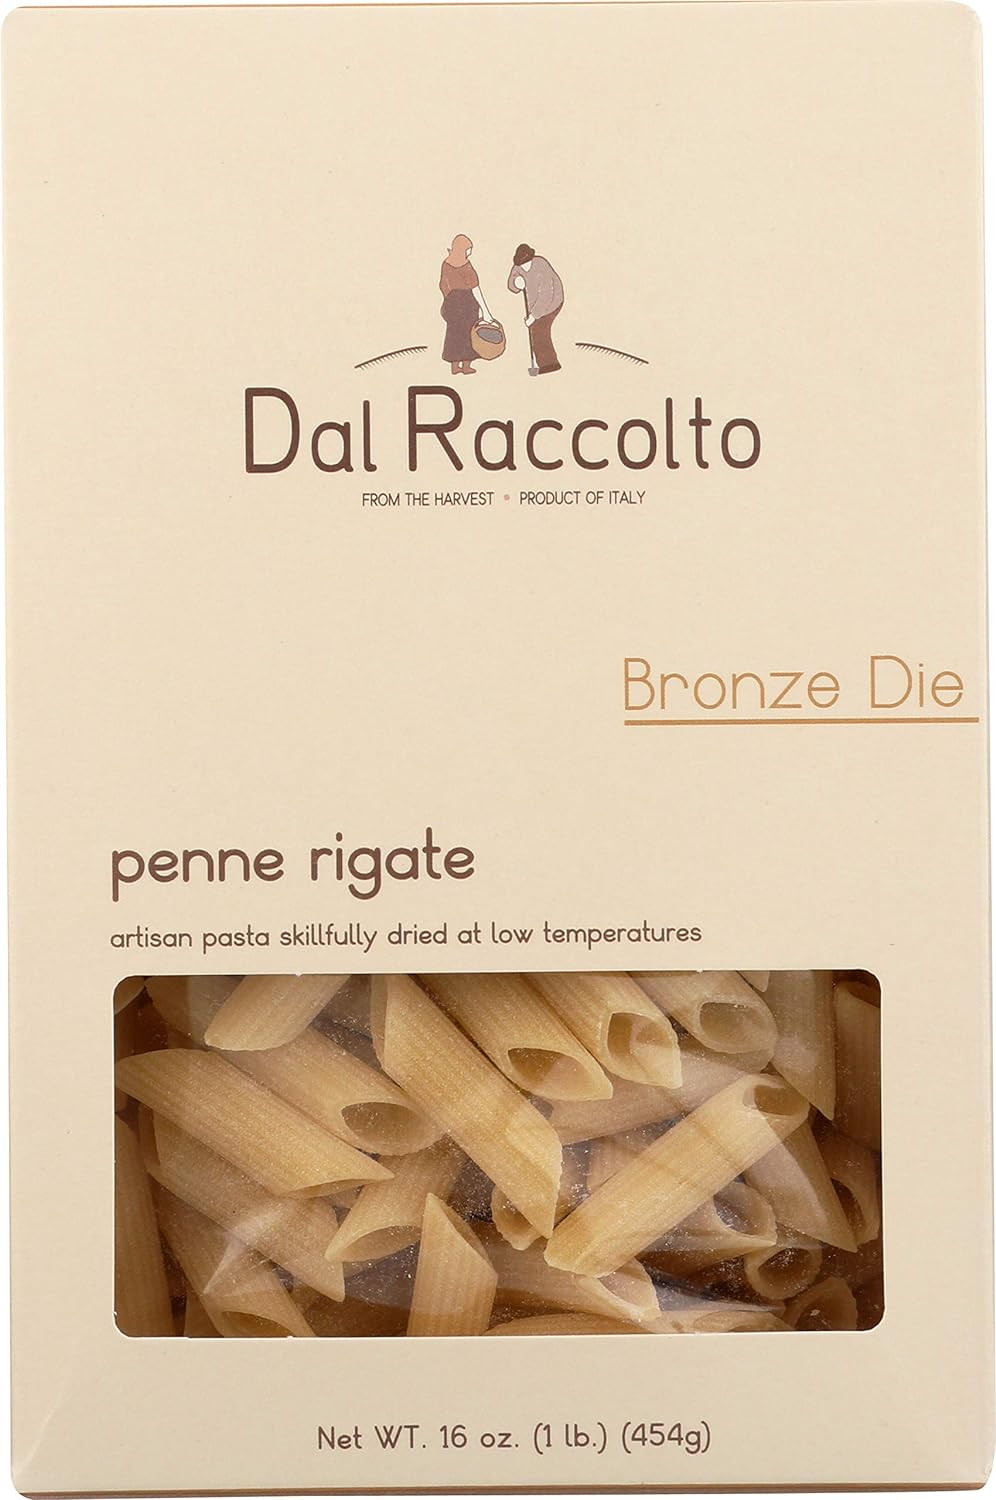 Dal Raccolto Bronze Die Pasta - Penne Rigate, 1 lb Box